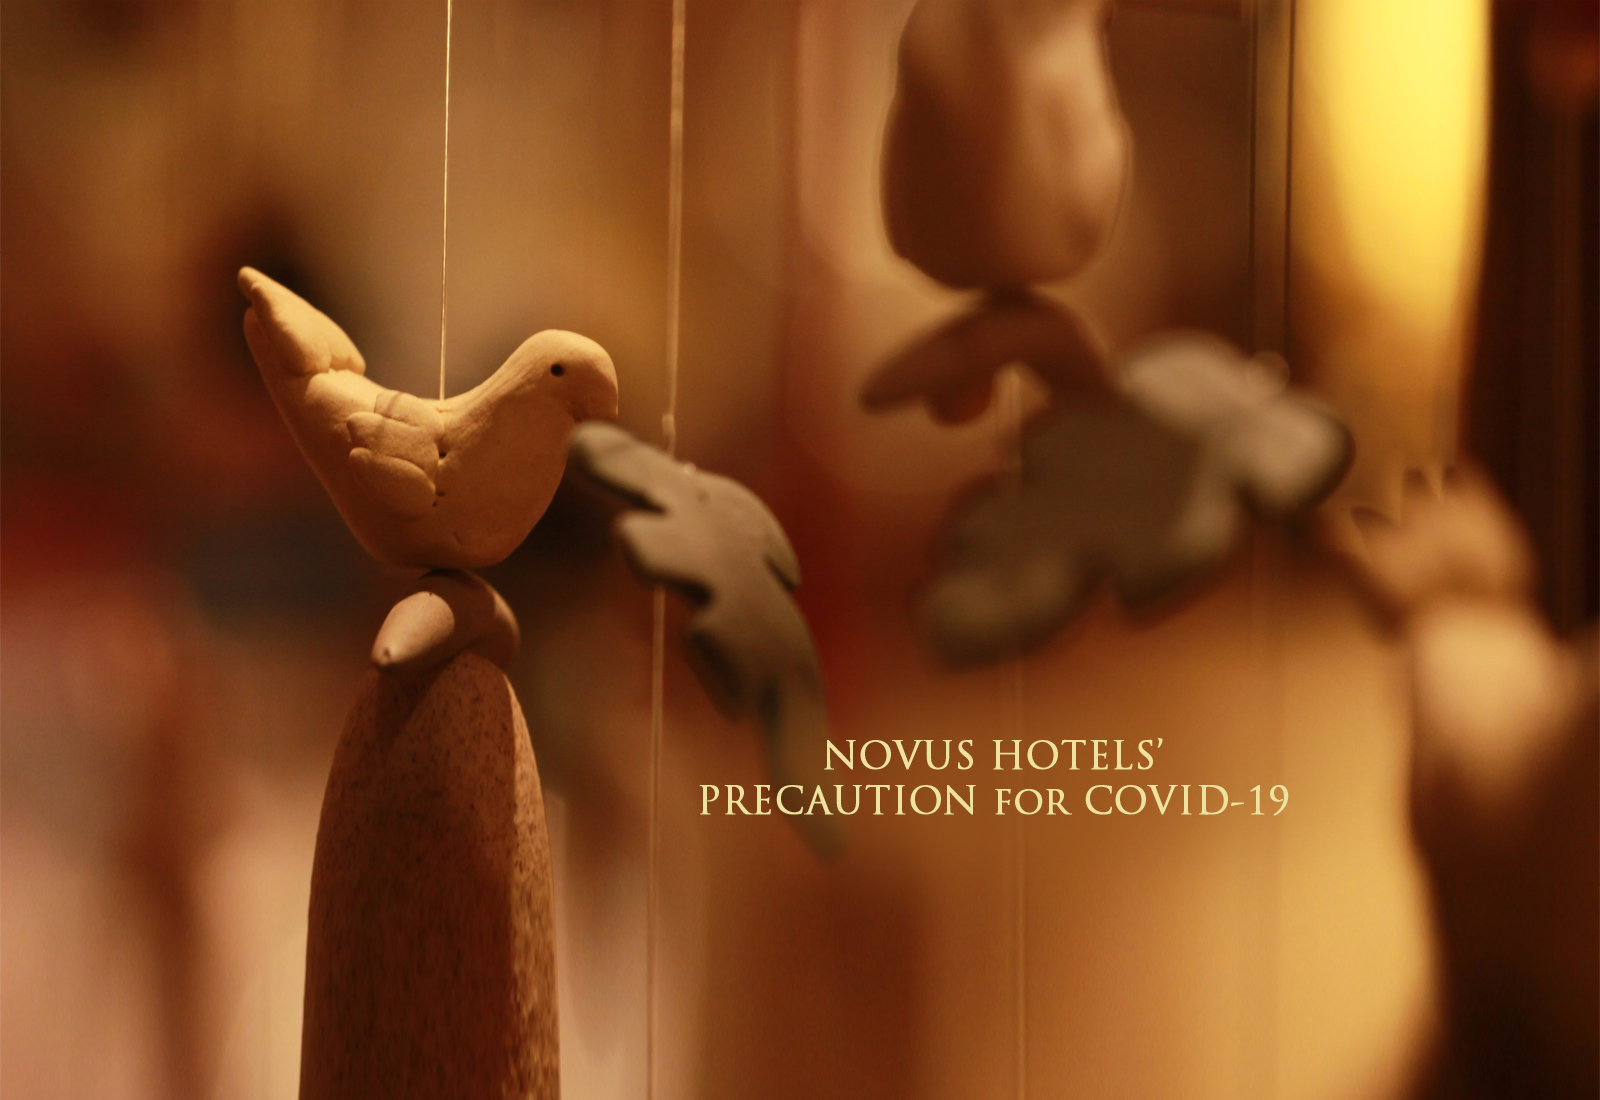 Novus Hotels precautions for COVID-19